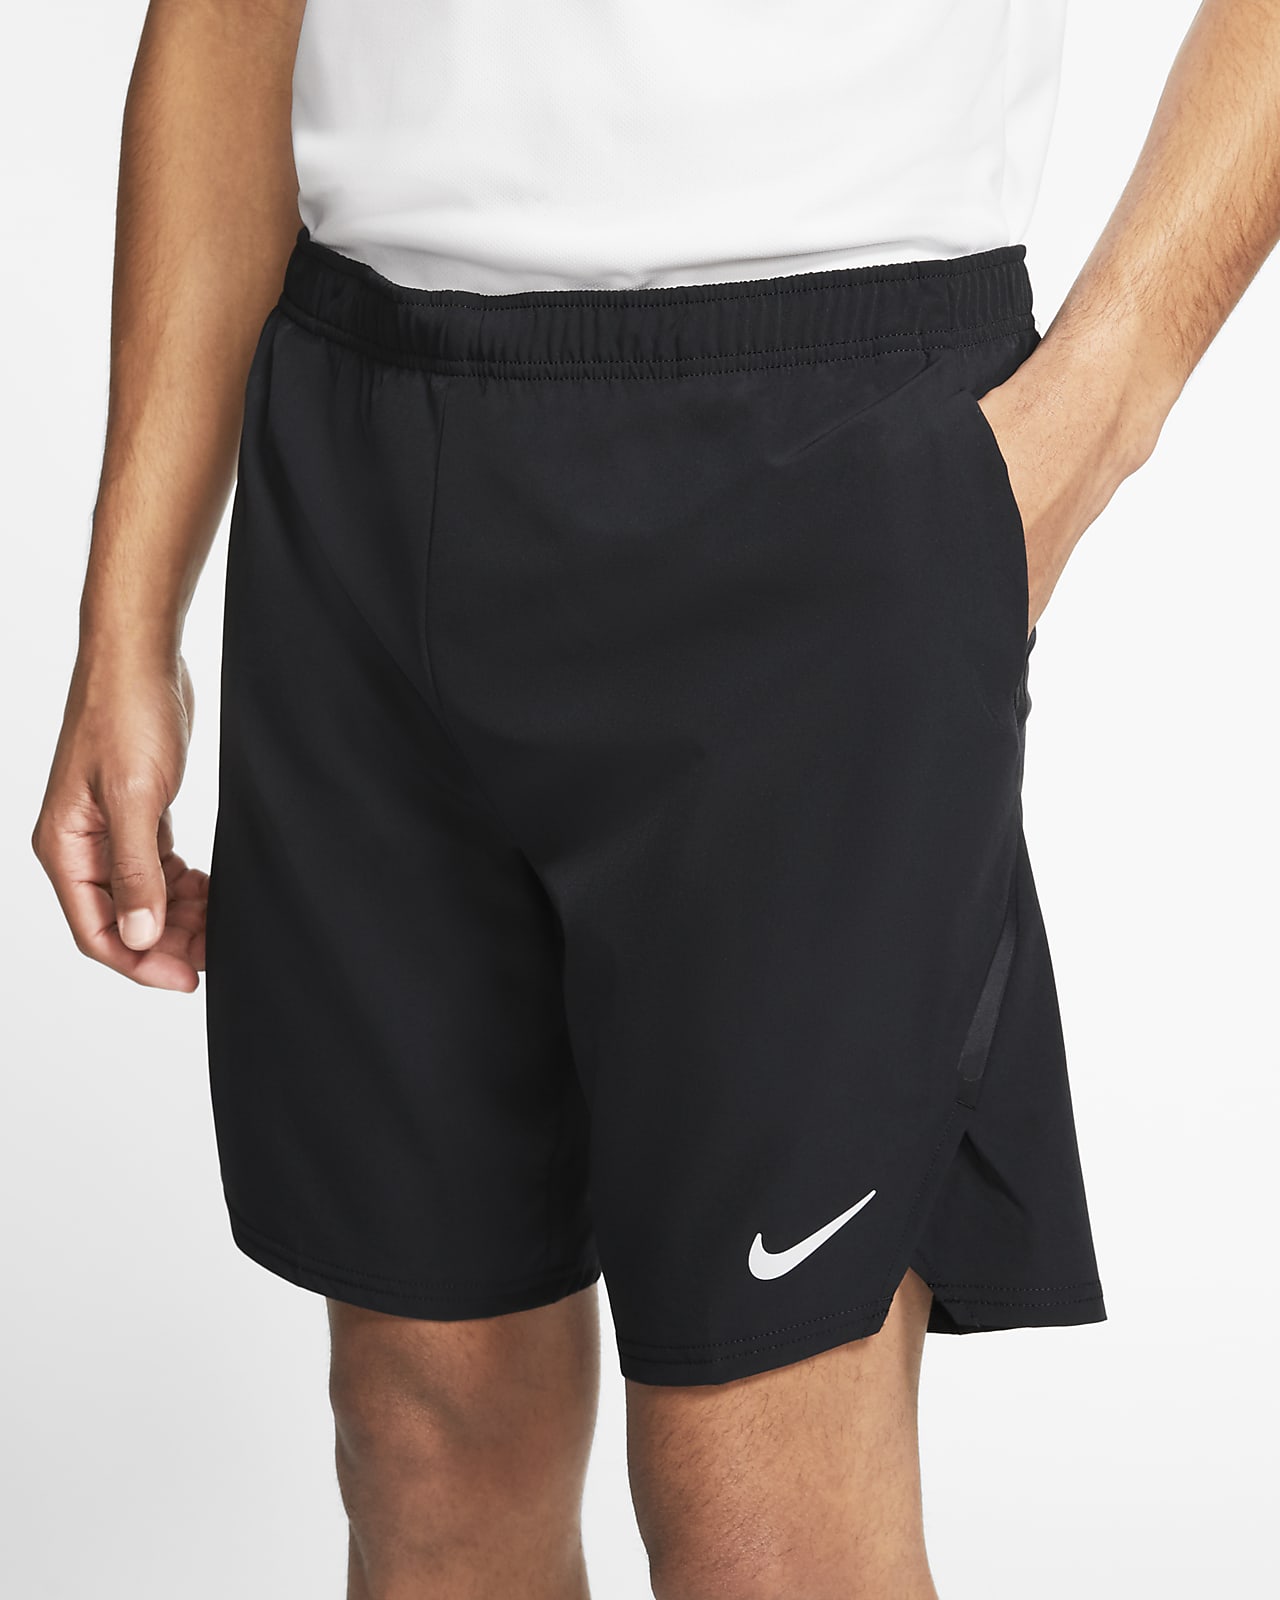 Мужские теннисные шорты NikeCourt Flex Ace. Nike RU